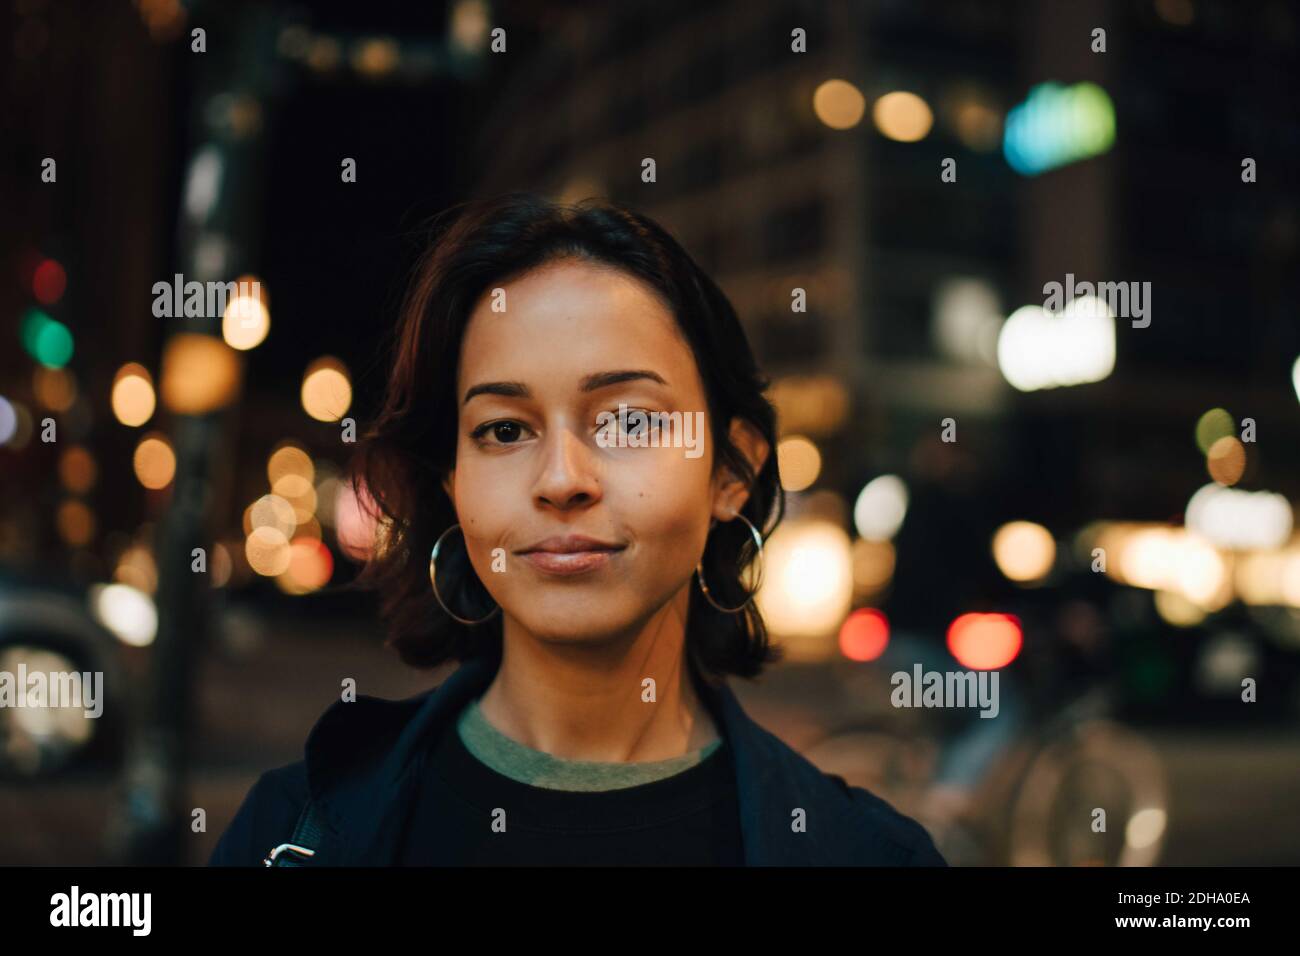 Porträt einer lächelnden Frau, die nachts in einer beleuchteten Stadt steht Stockfoto